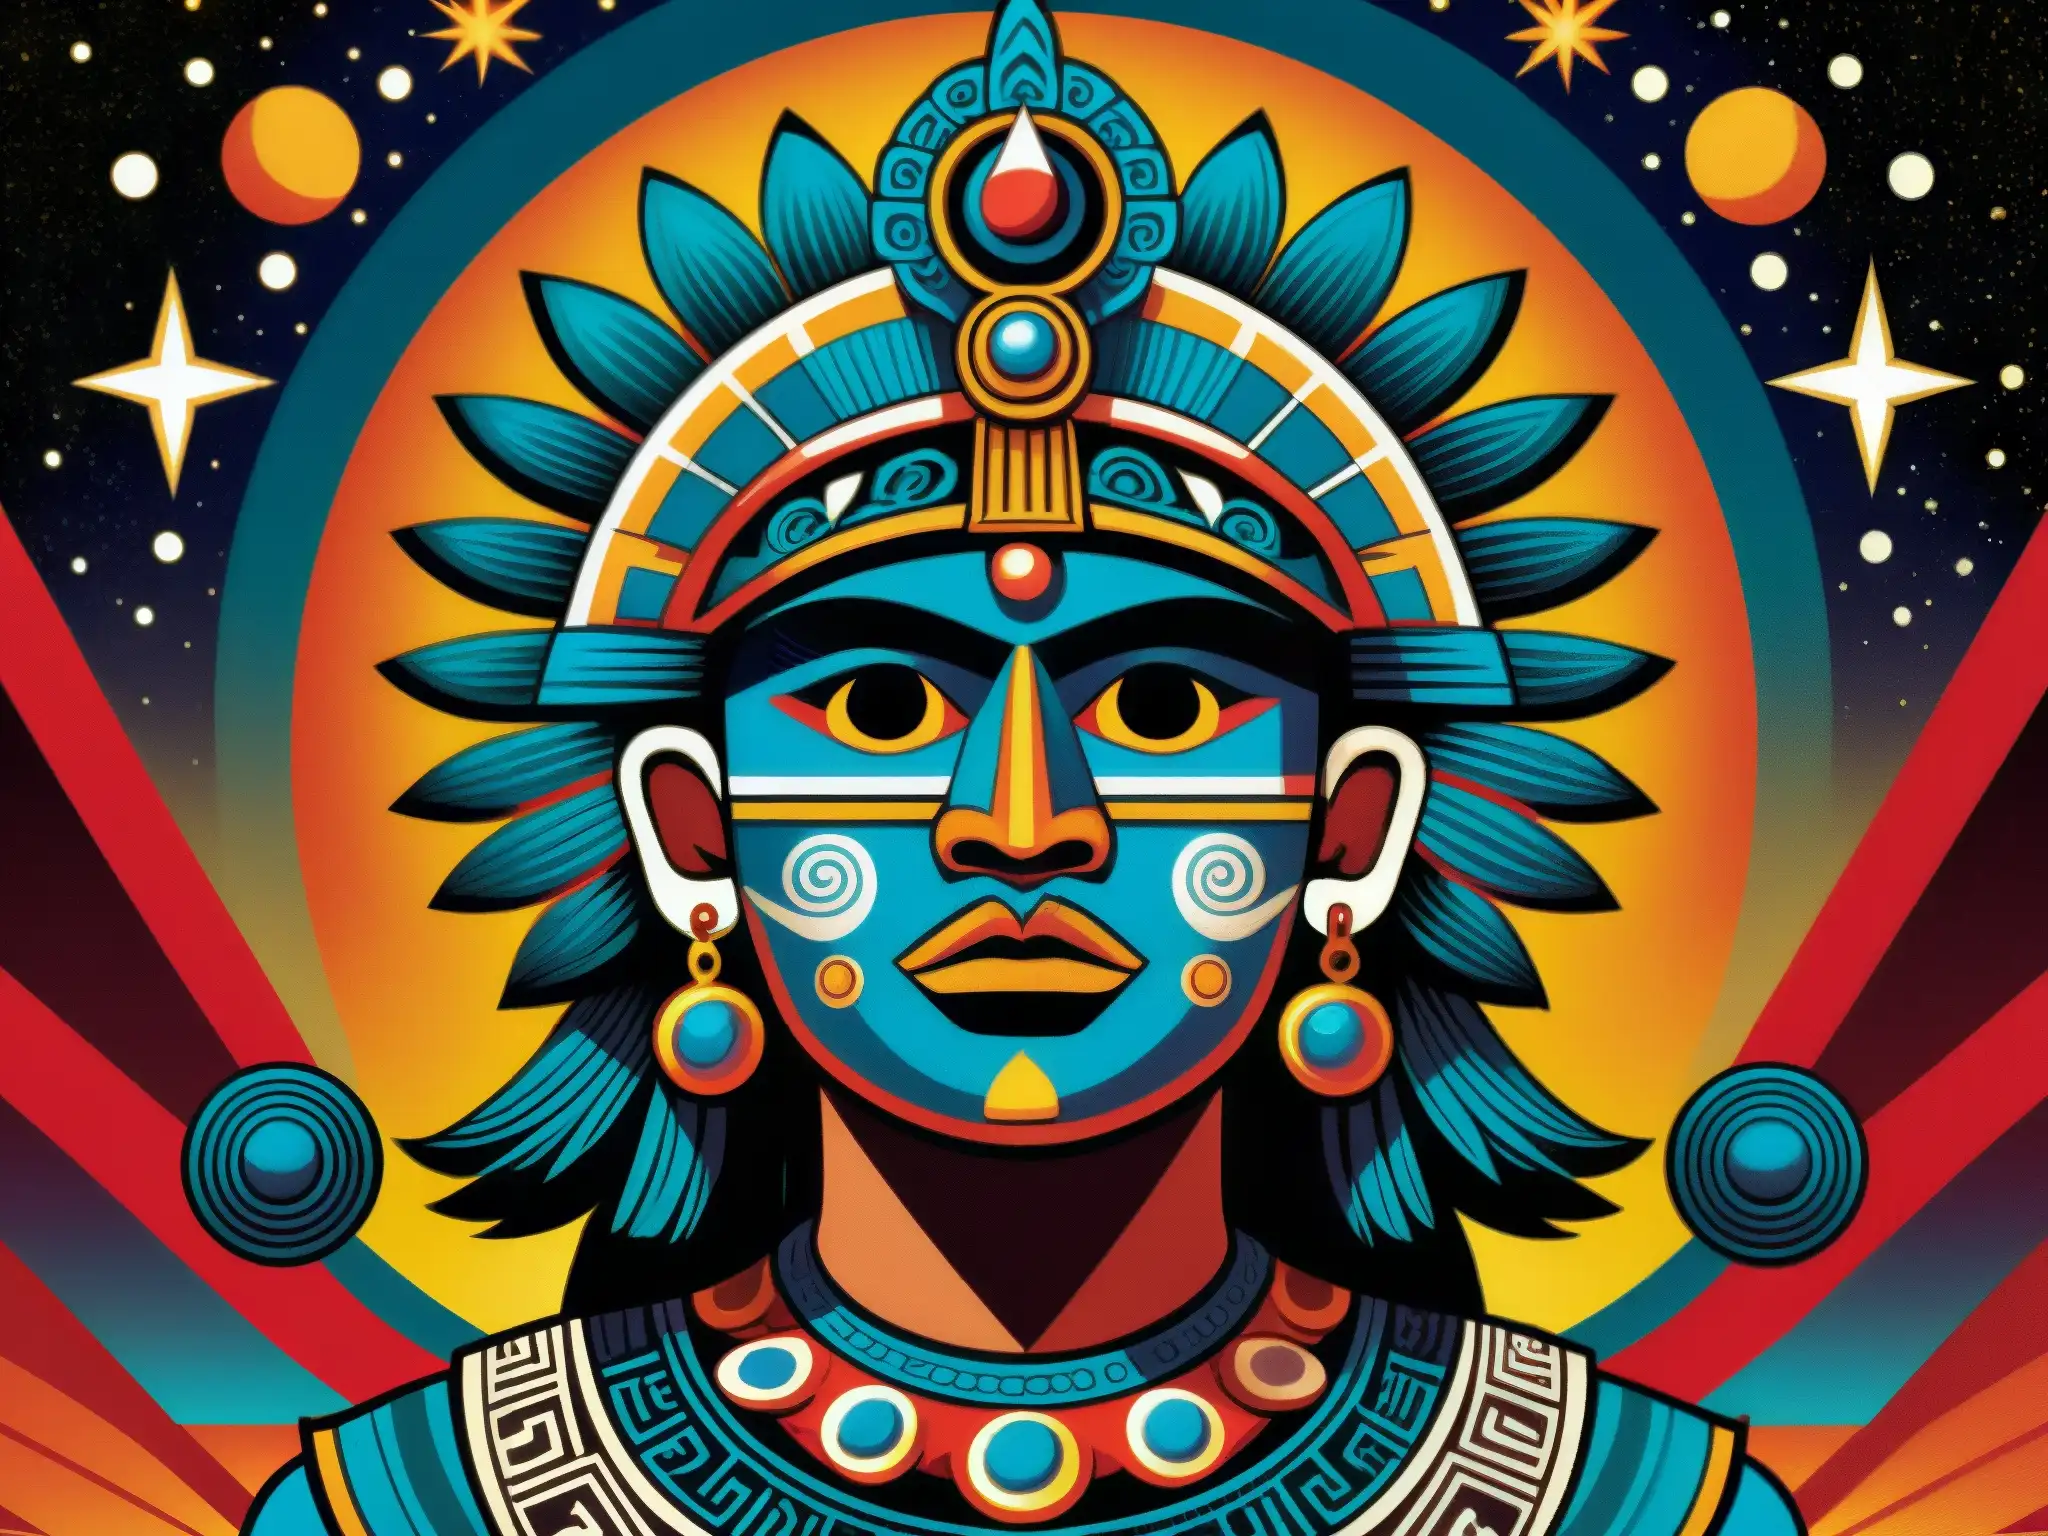 Ilustración detallada de los Tzitzimime, deidades cósmicas de la mitología azteca, con expresiones aterradoras y ambiente celestial